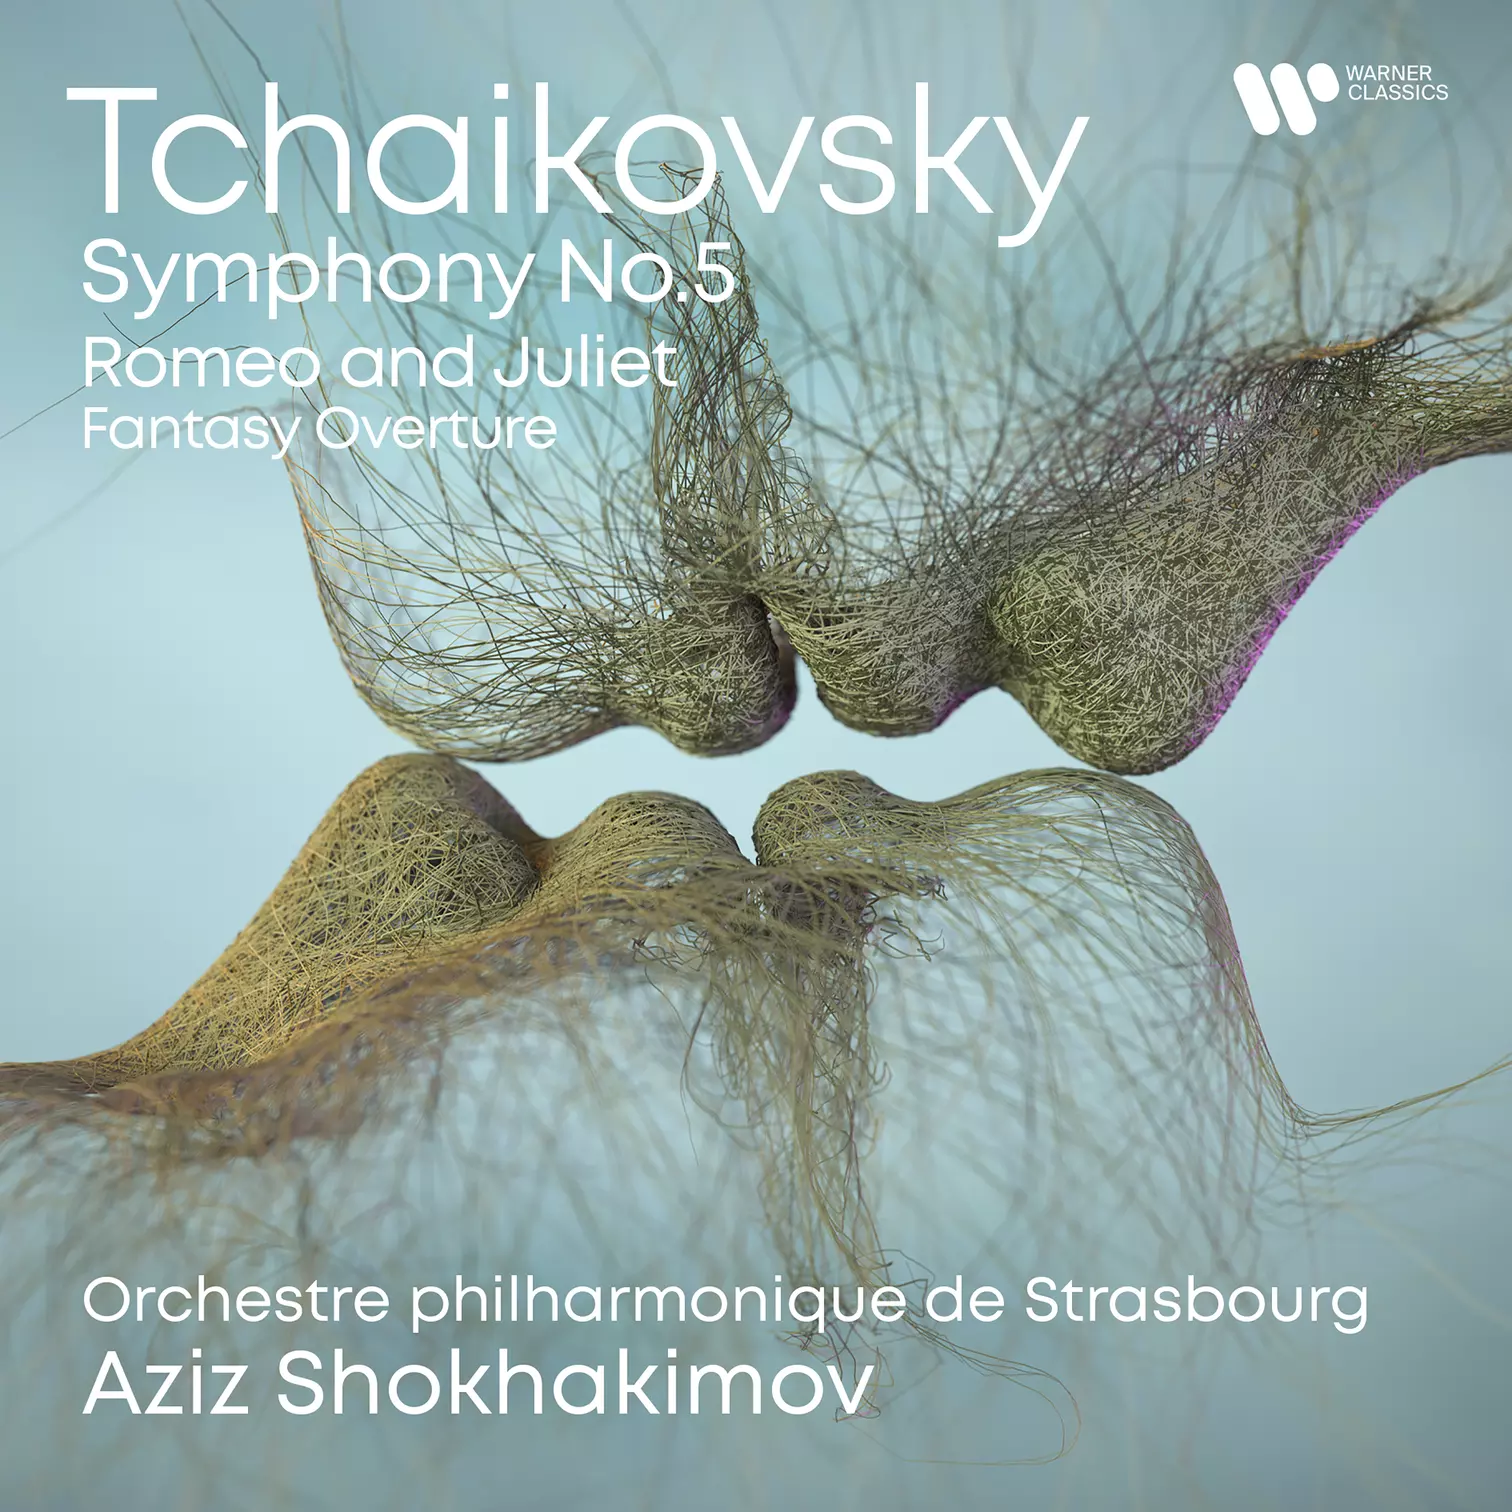 Tchaikovsky: Symphony No. 5 & Romeo and Juliet Fantasy Overture